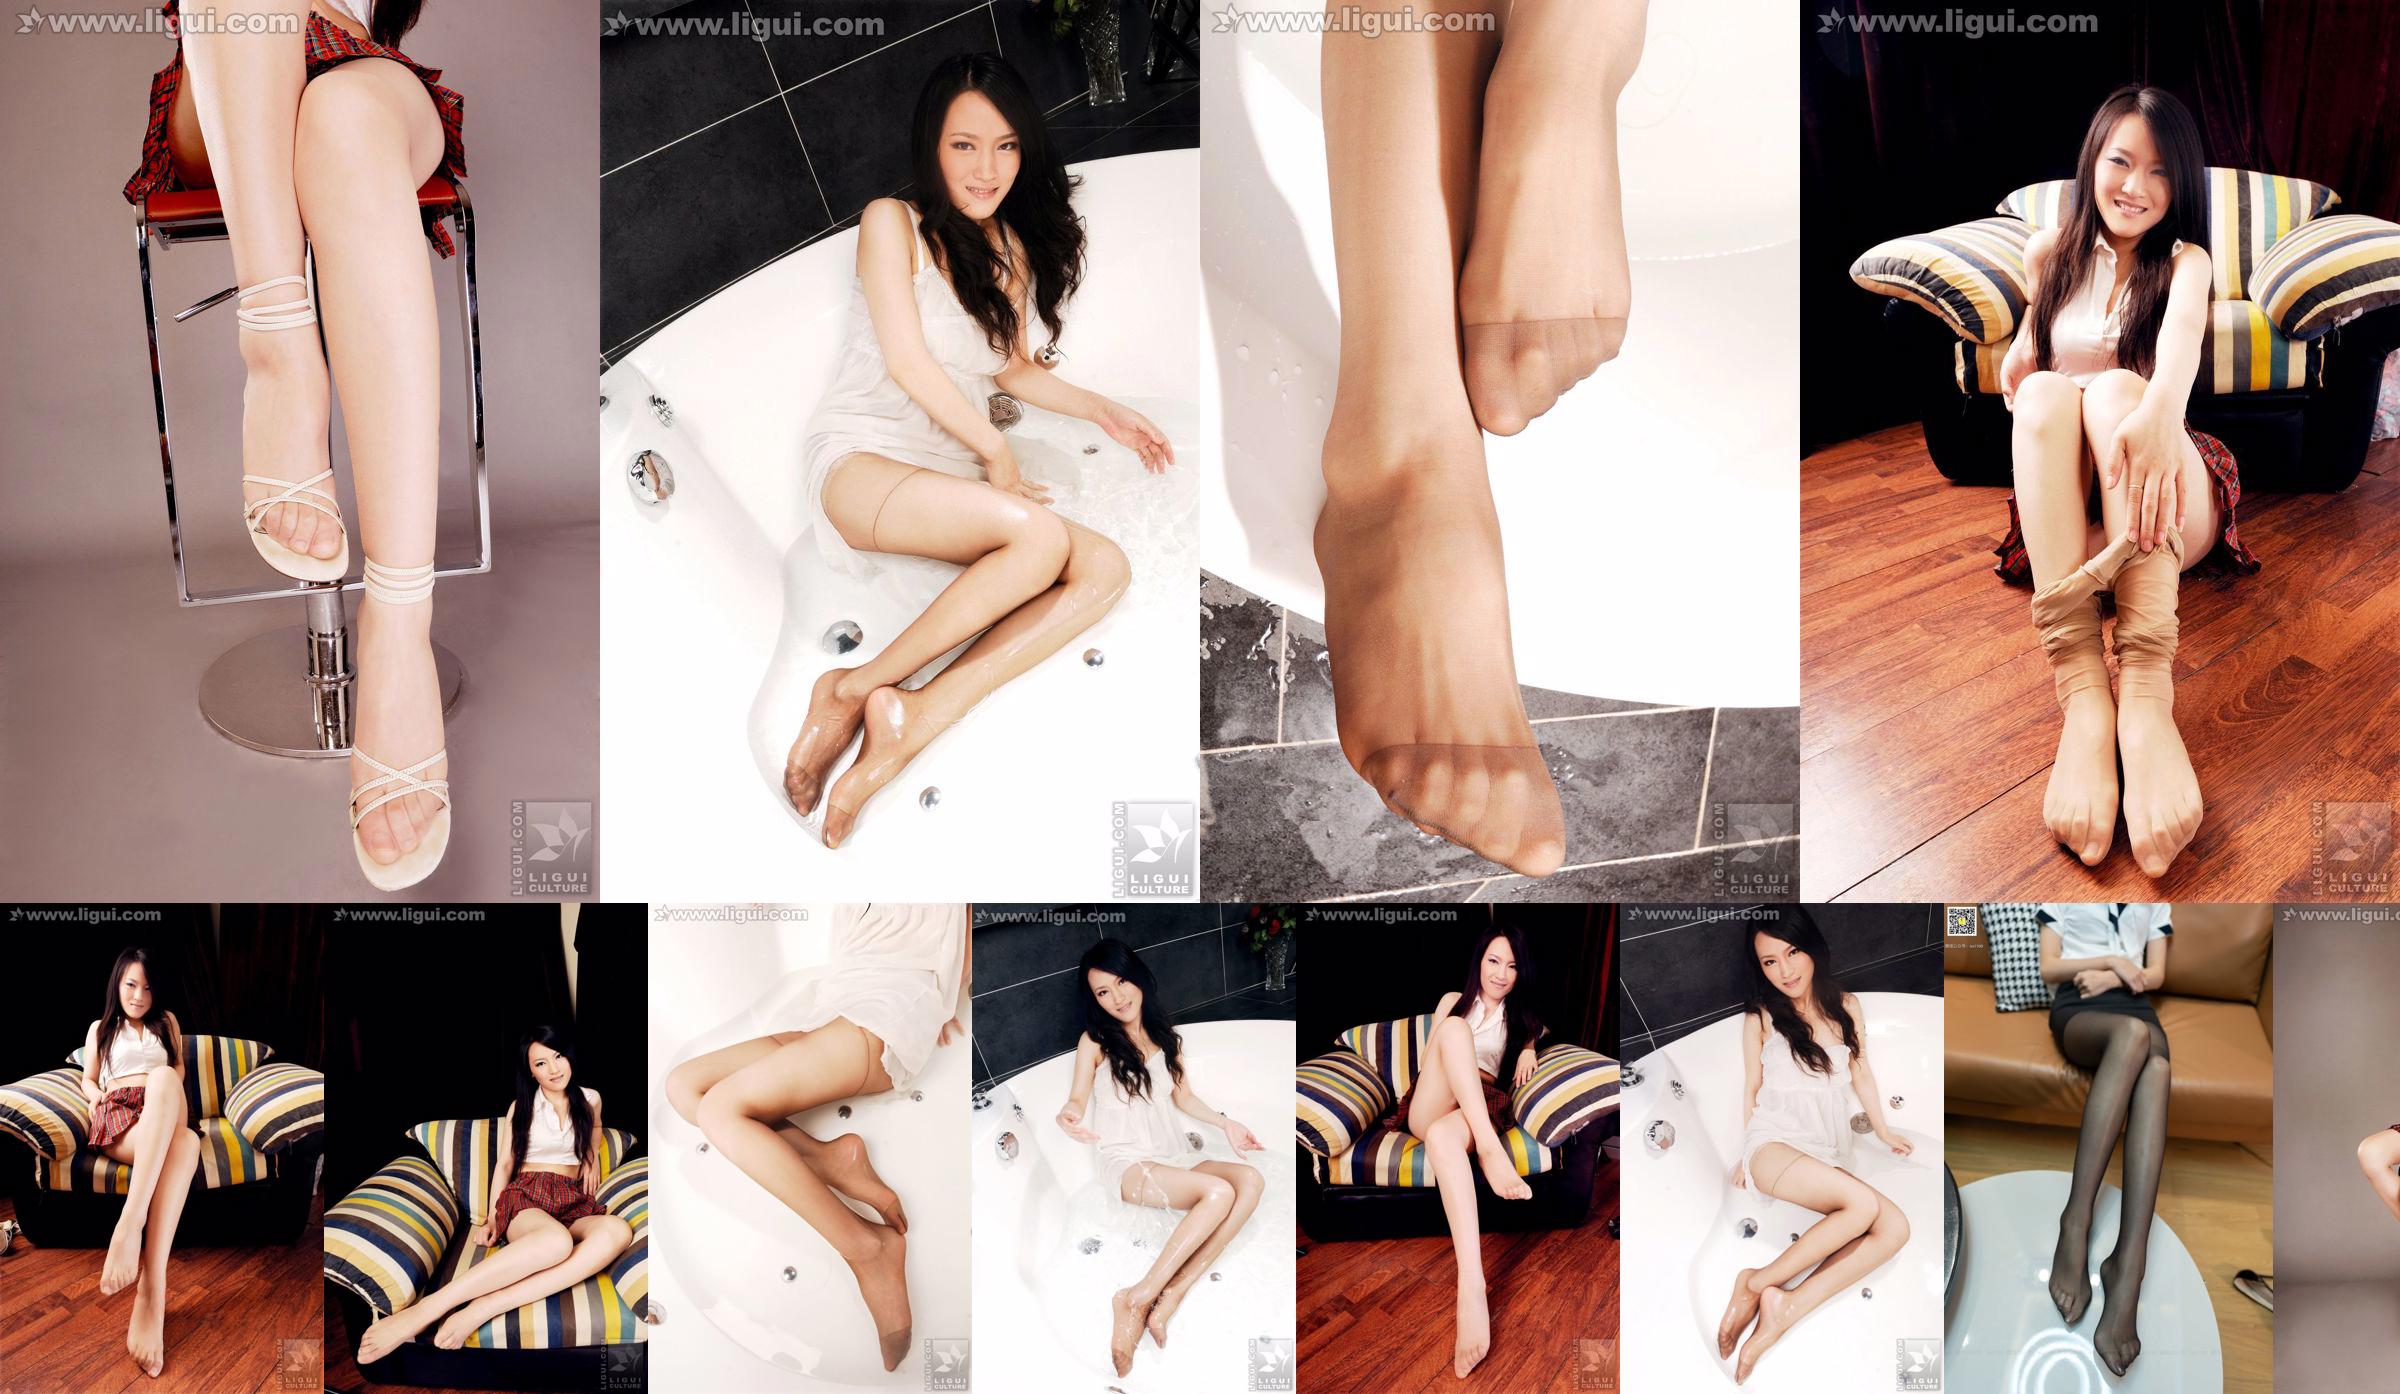 モデルウェンティン「ピュアで美しい足」[丽柜LiGui]シルクフット写真写真 No.2f4901 ページ3